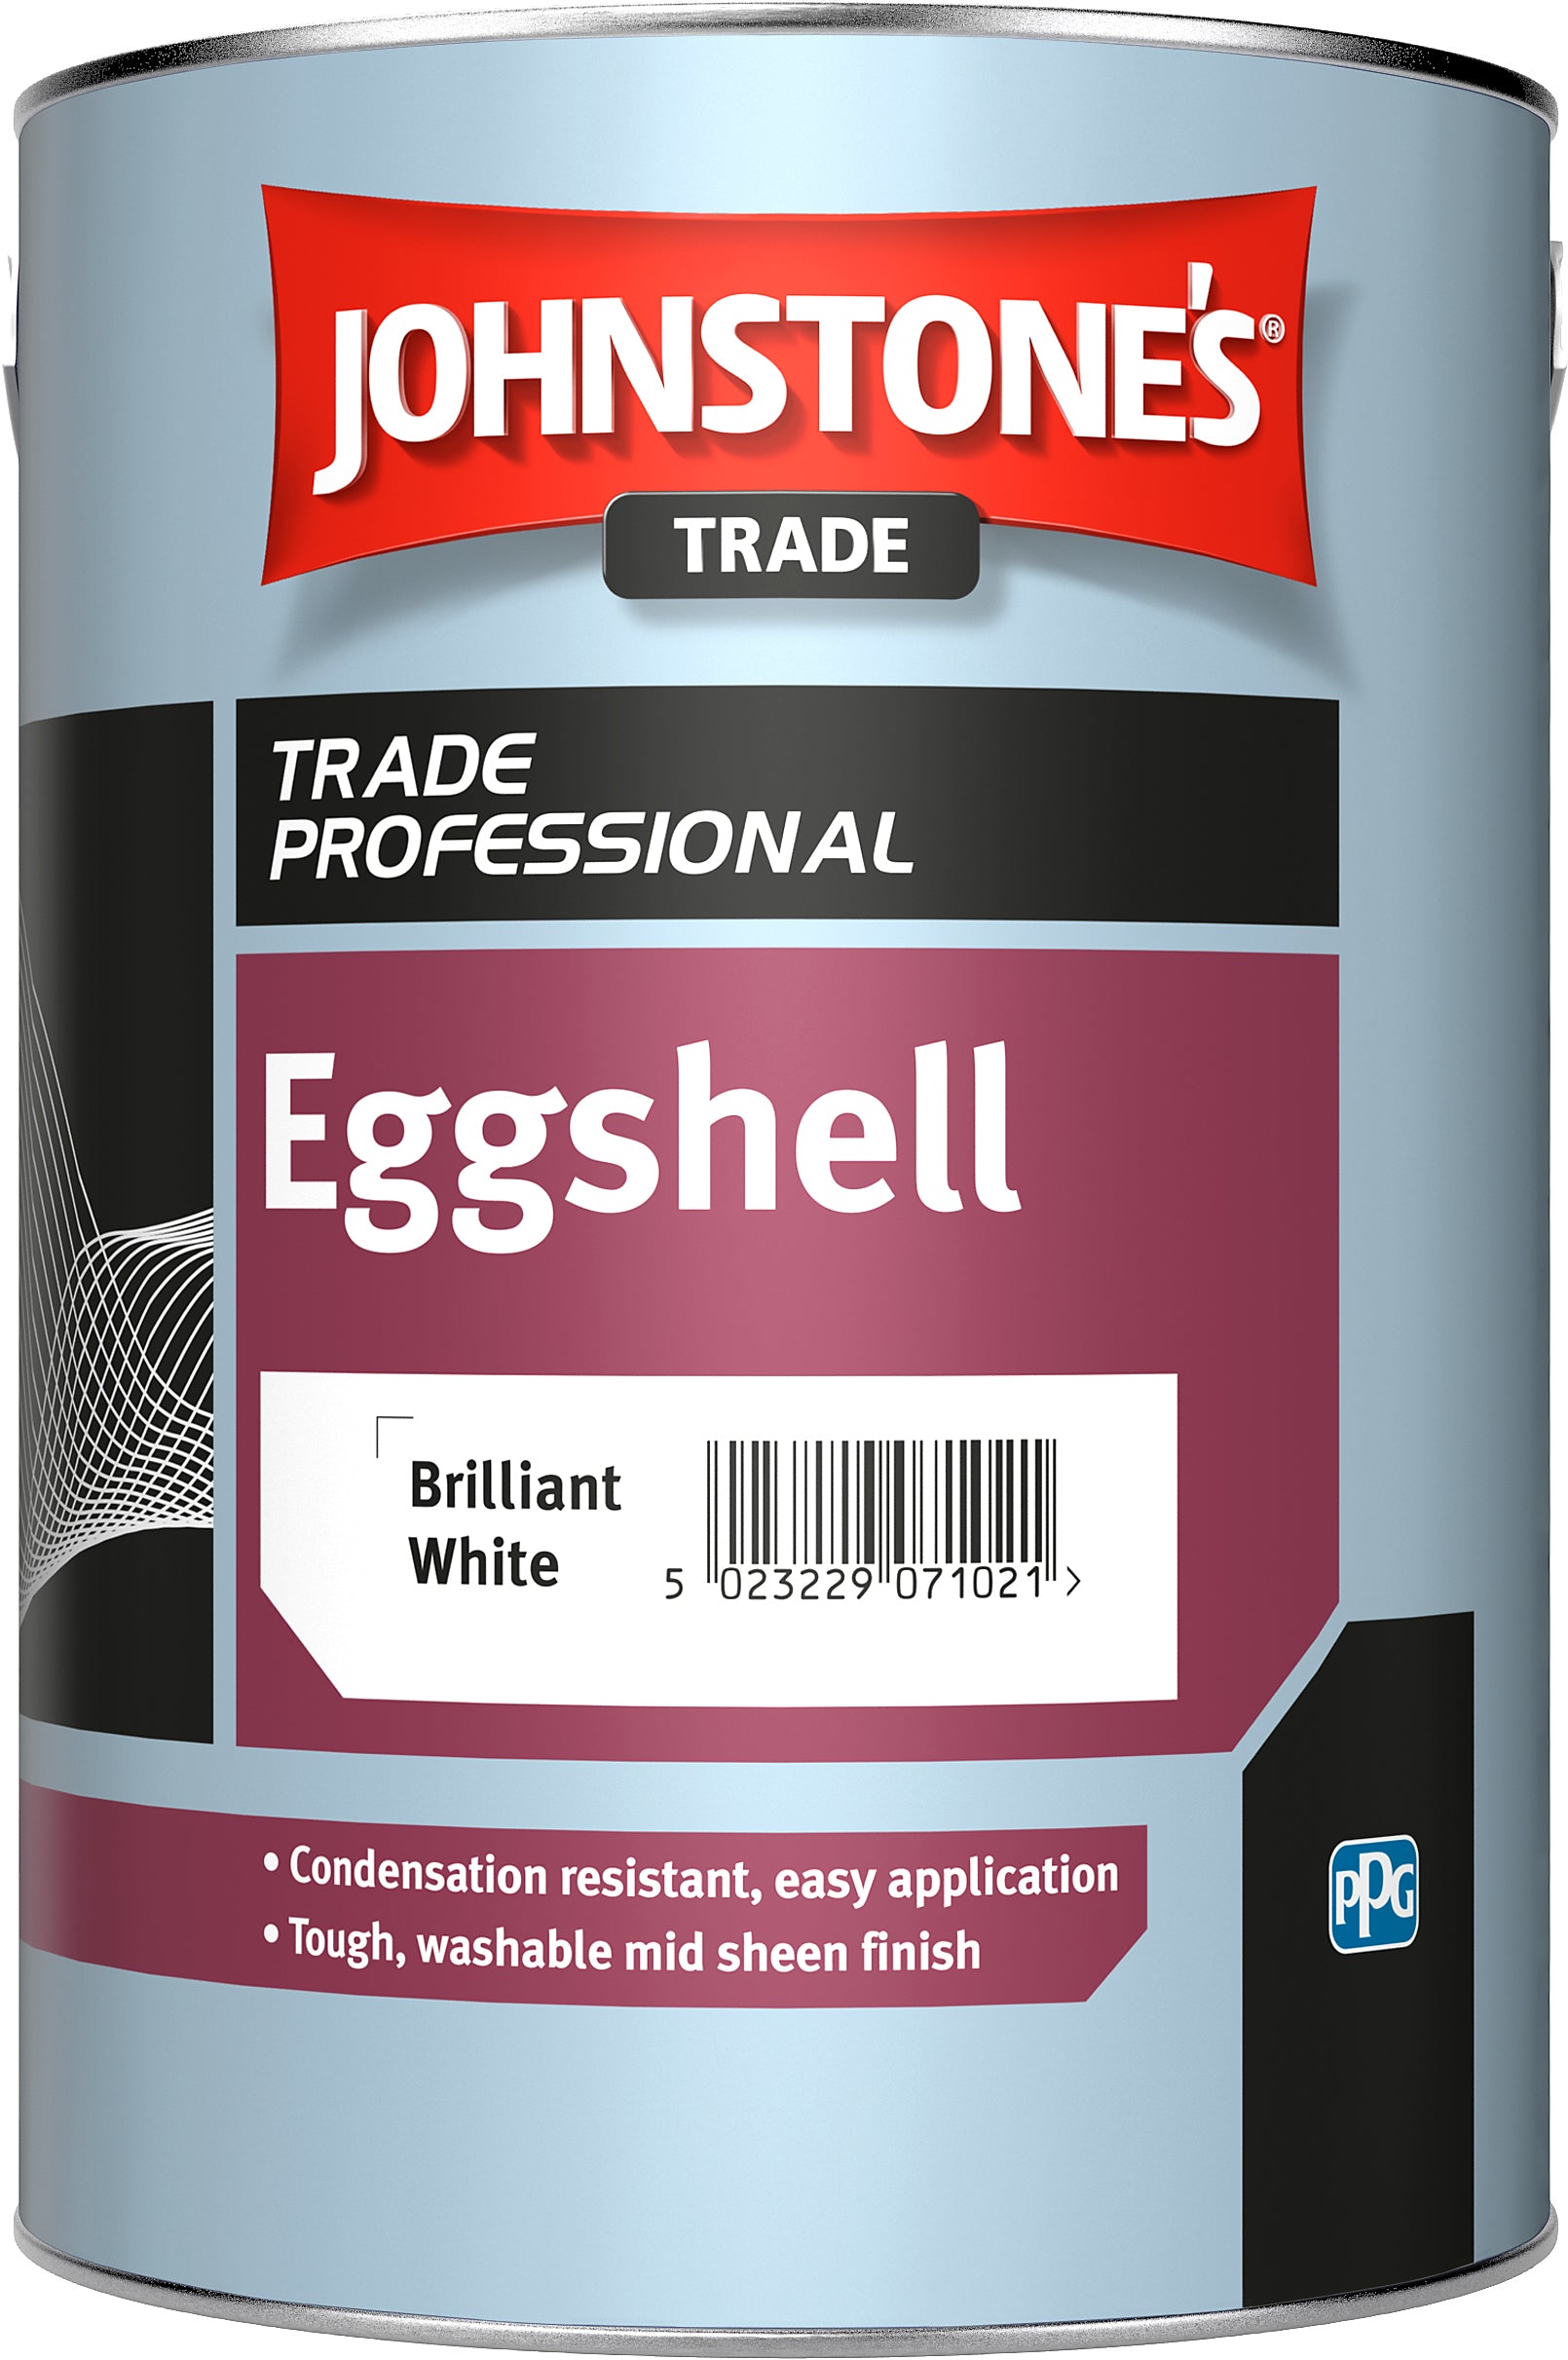 Johnstones Eggshell - Brilliant White